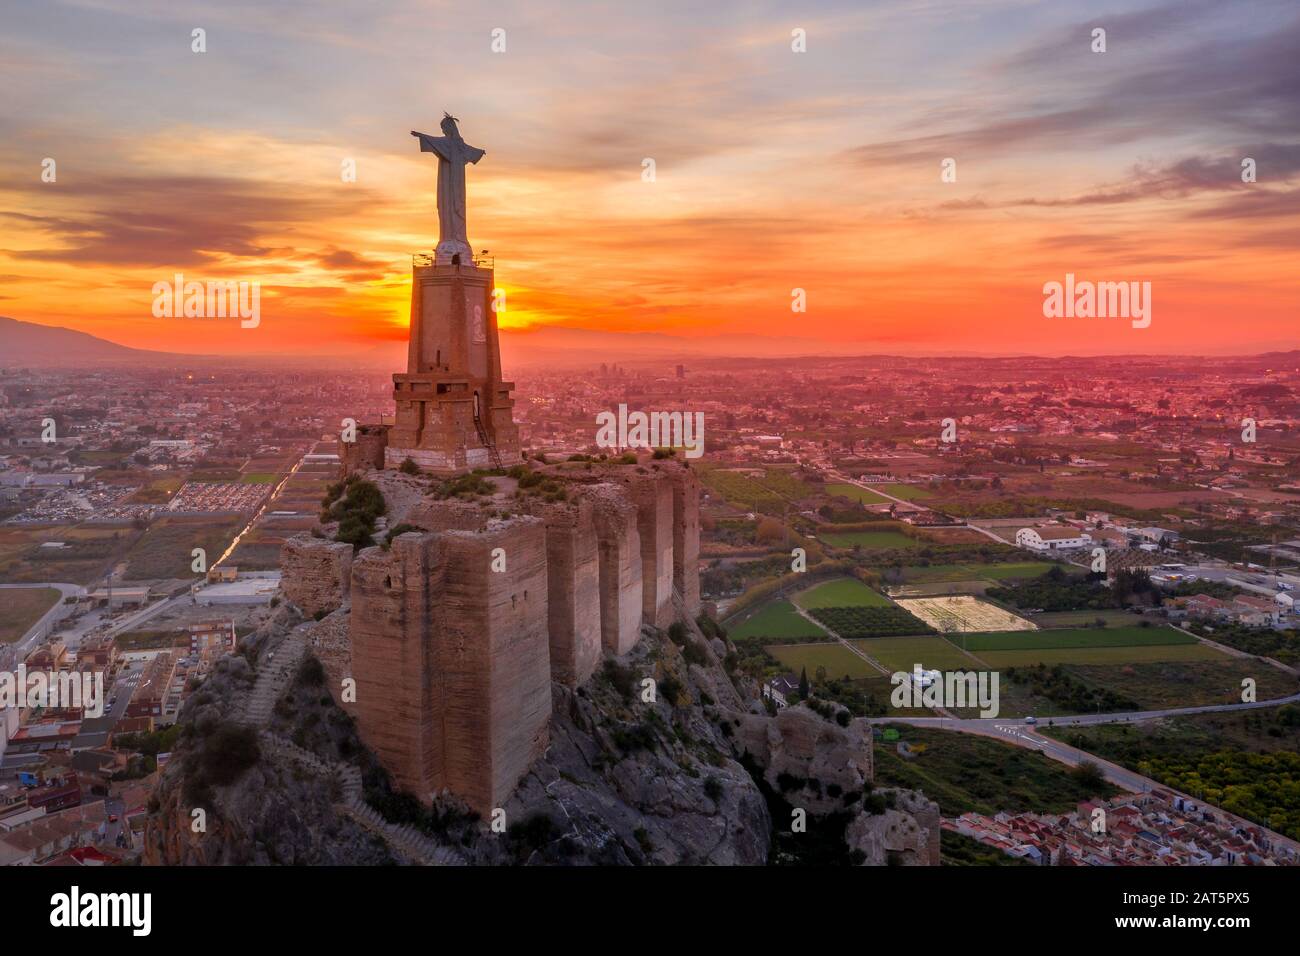 Monteagudo castello medievale rovina dodici torri rettangolari che circondano la collina e il sacro cuore di Gesù Cristo statua in cima vicino Murcia Spagna Foto Stock